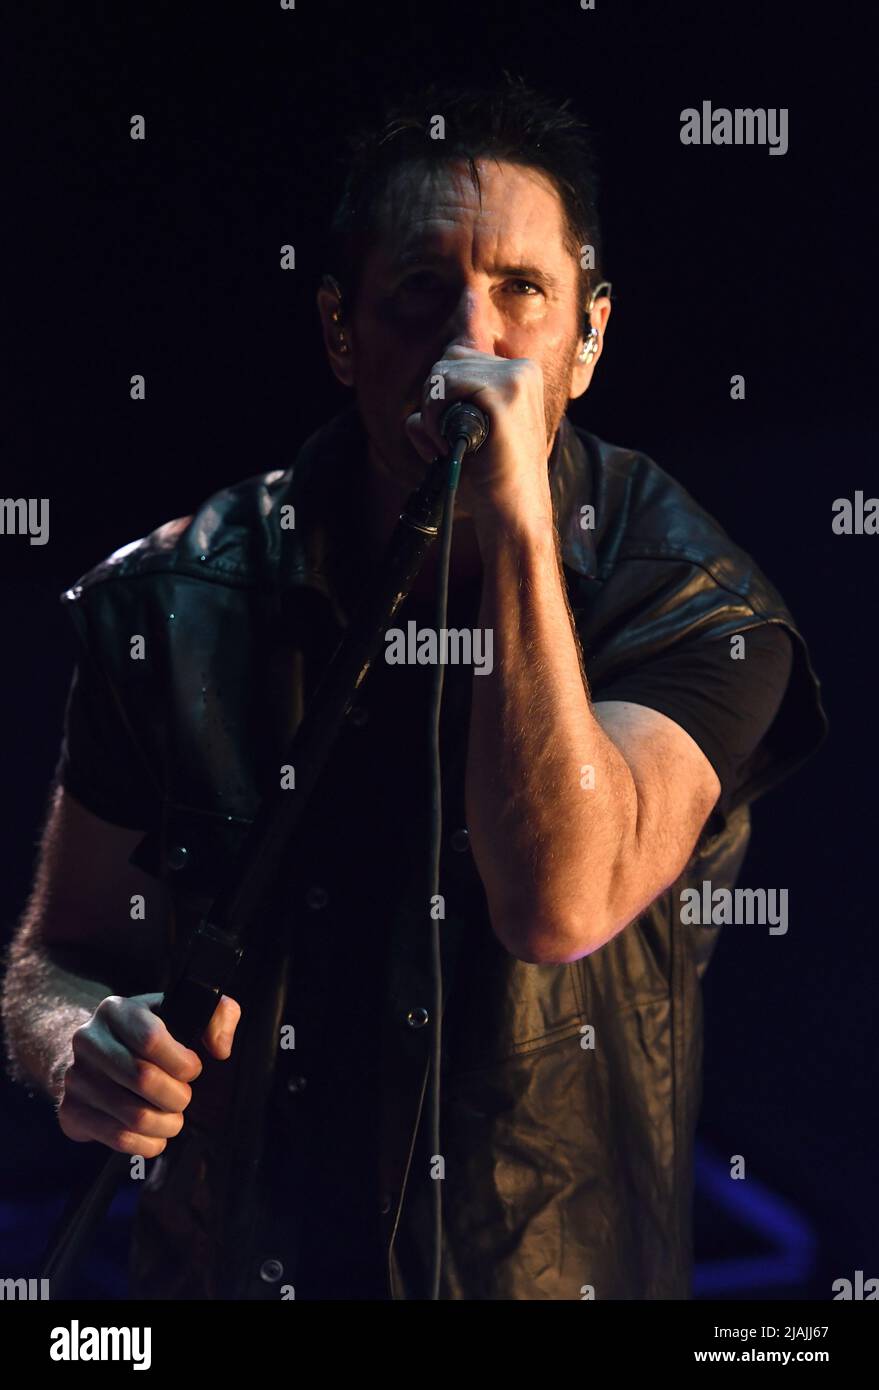 Il cantante, cantautore, multi-strumentista e produttore Trent Reznor si esibisce sul palco durante un concerto dal vivo con Nine Inch Nails durante il Boston Calling Music Festival tenutosi ad Allston, Massachusetts, il 27 maggio 2022. Foto Stock